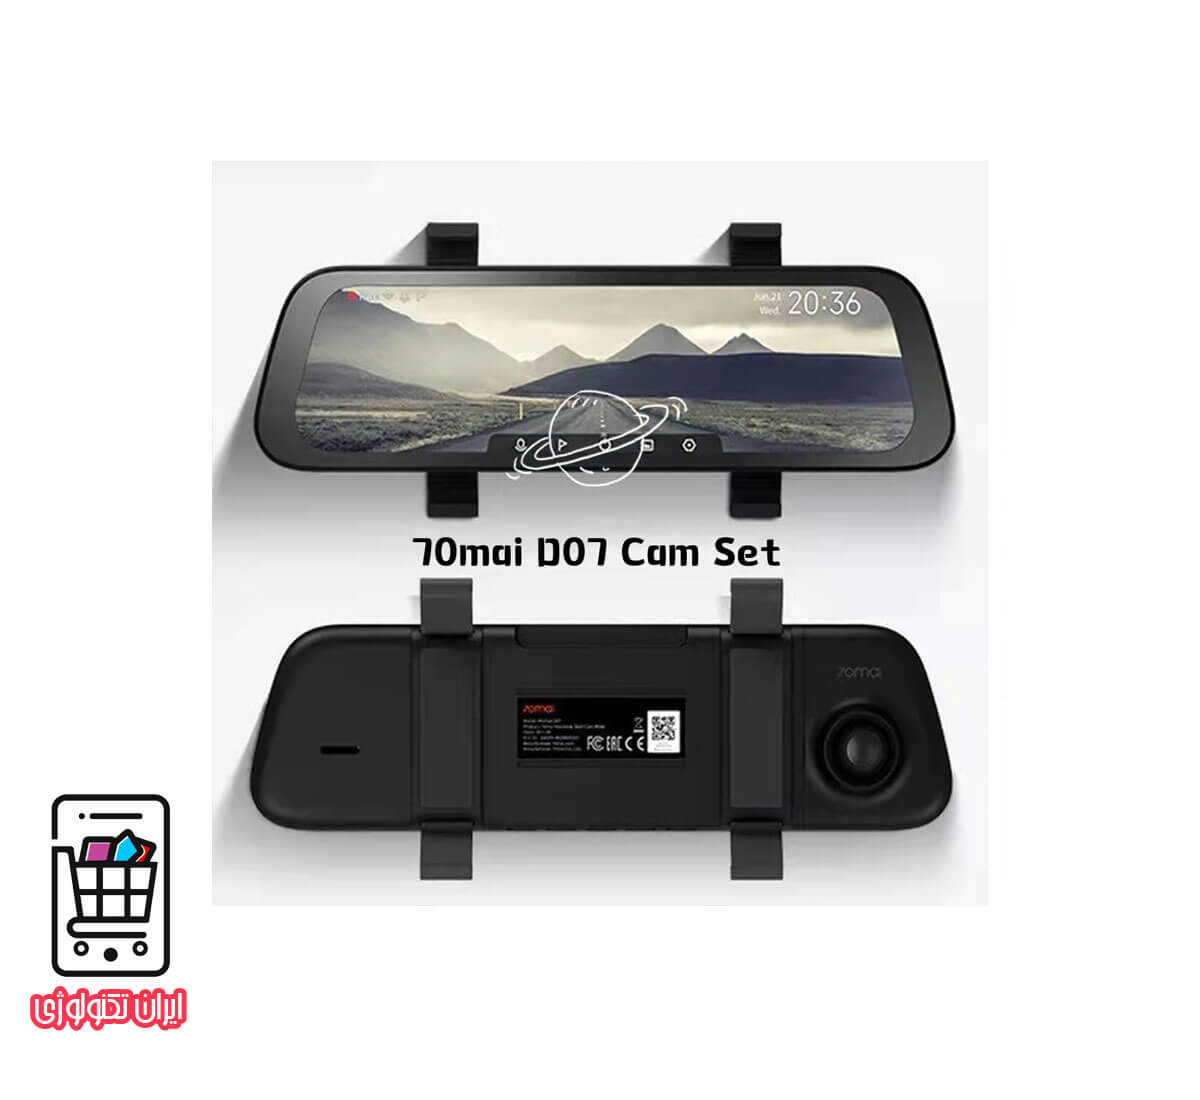 دوربين خودرو شيائومي 70mai d07 rearview dash cam wide set(night vision)